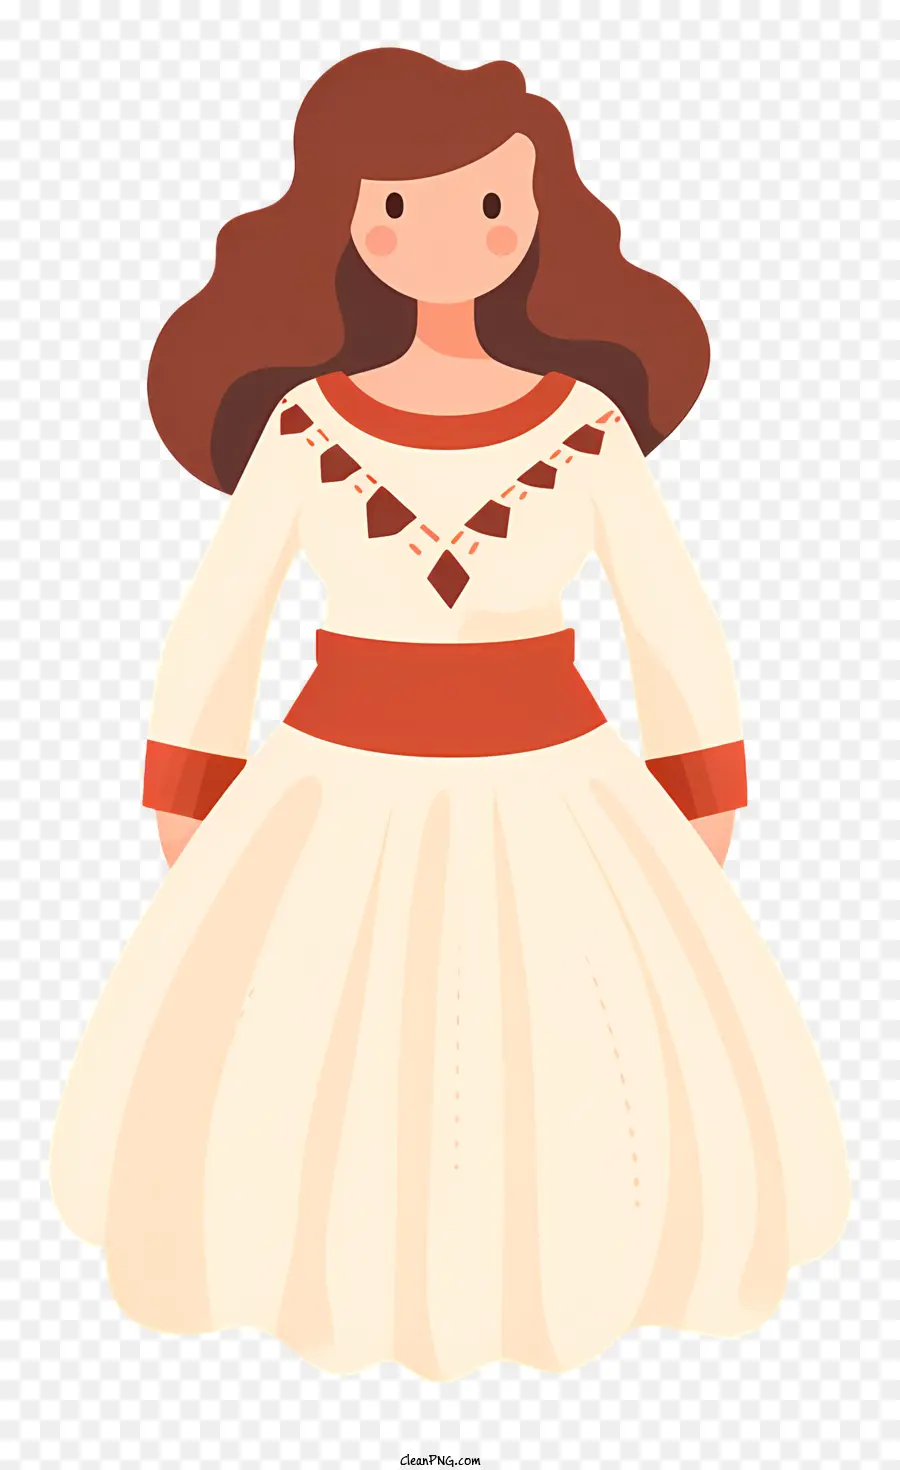 Donna in abito bianco a fascia rossa a maniche lunghe con capelli marroni lunghi - Donna seria in abito bianco con fascia rossa